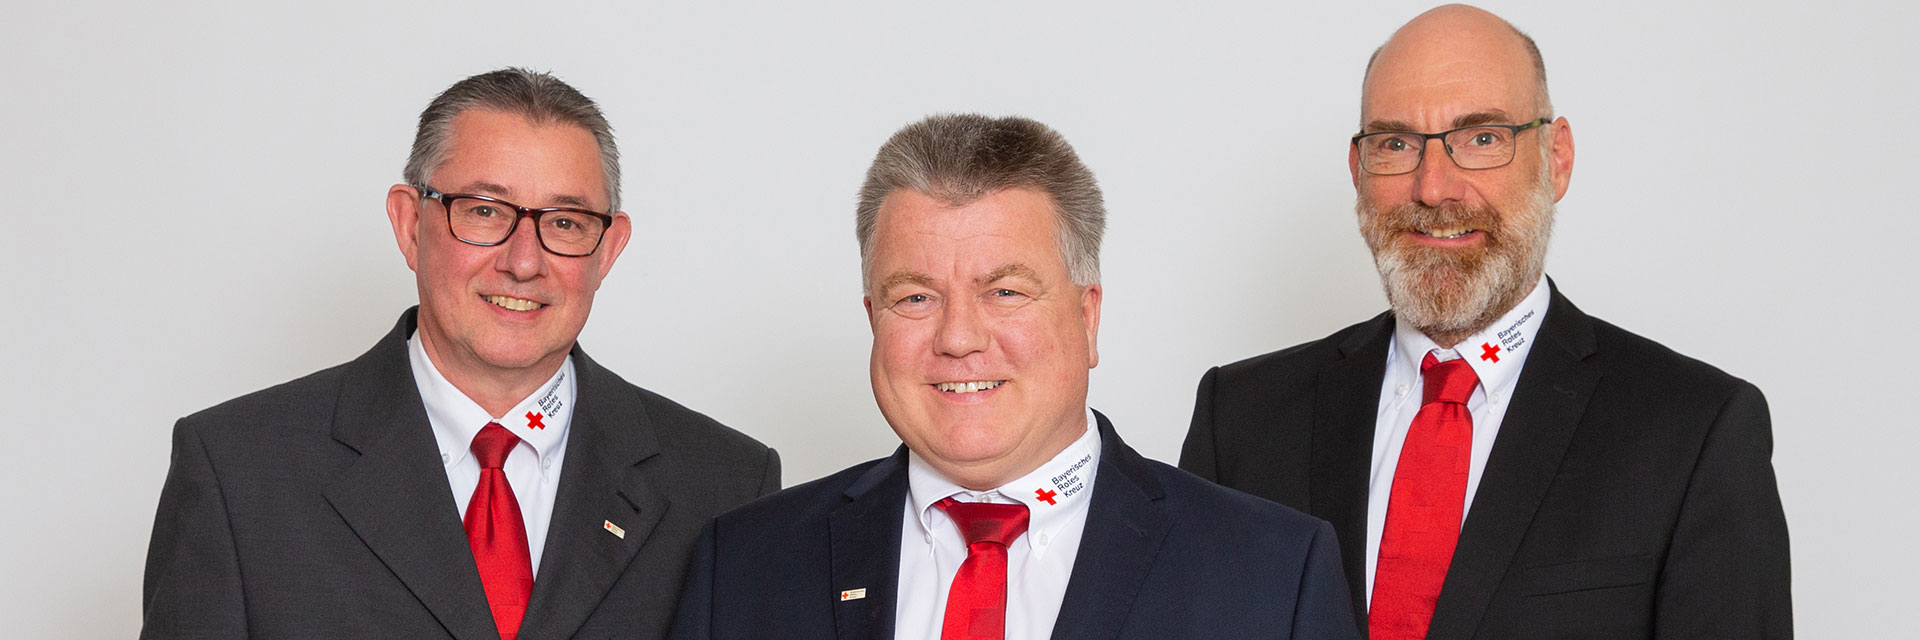 Die Kreisgeschäftsführung des BRK Kreisverband Rosenheim: v.l. Thomas Neugebauer (stellv. KGF), Direktor Martin Schmidt (KGF) und Stefan Müller (stellv. KGF)